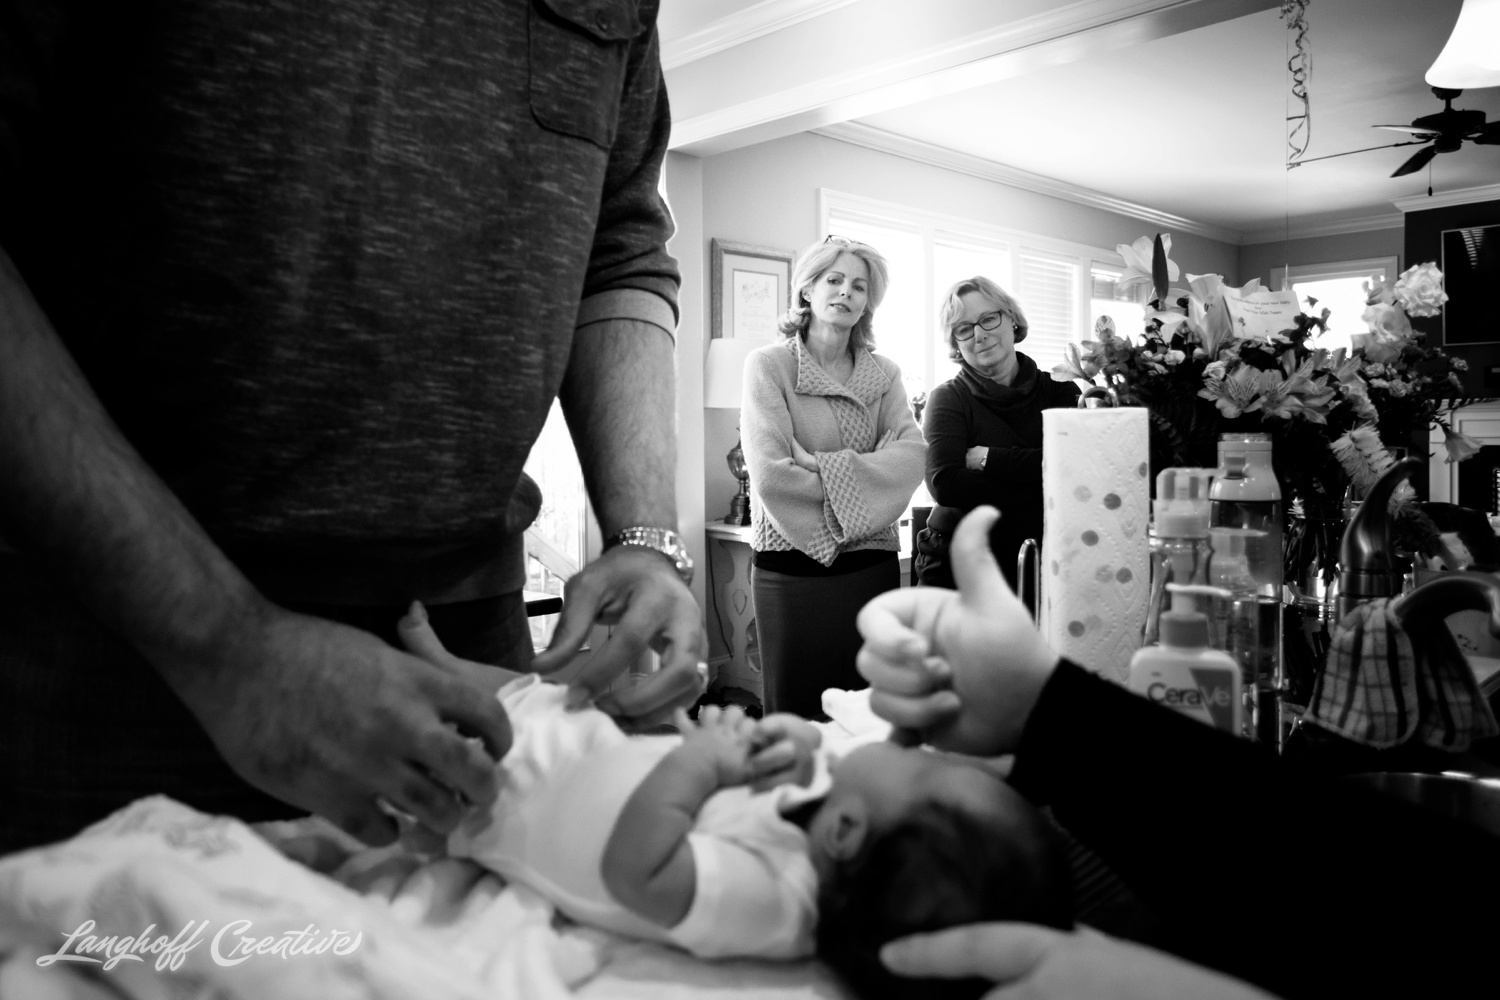 DocumentaryNewbornSession-DocumentaryFamilyPhotography-RDUfamily-Durham-NewbornPhotography-LanghoffCreative-GambinoFamily-Feb2018-12-image.jpg